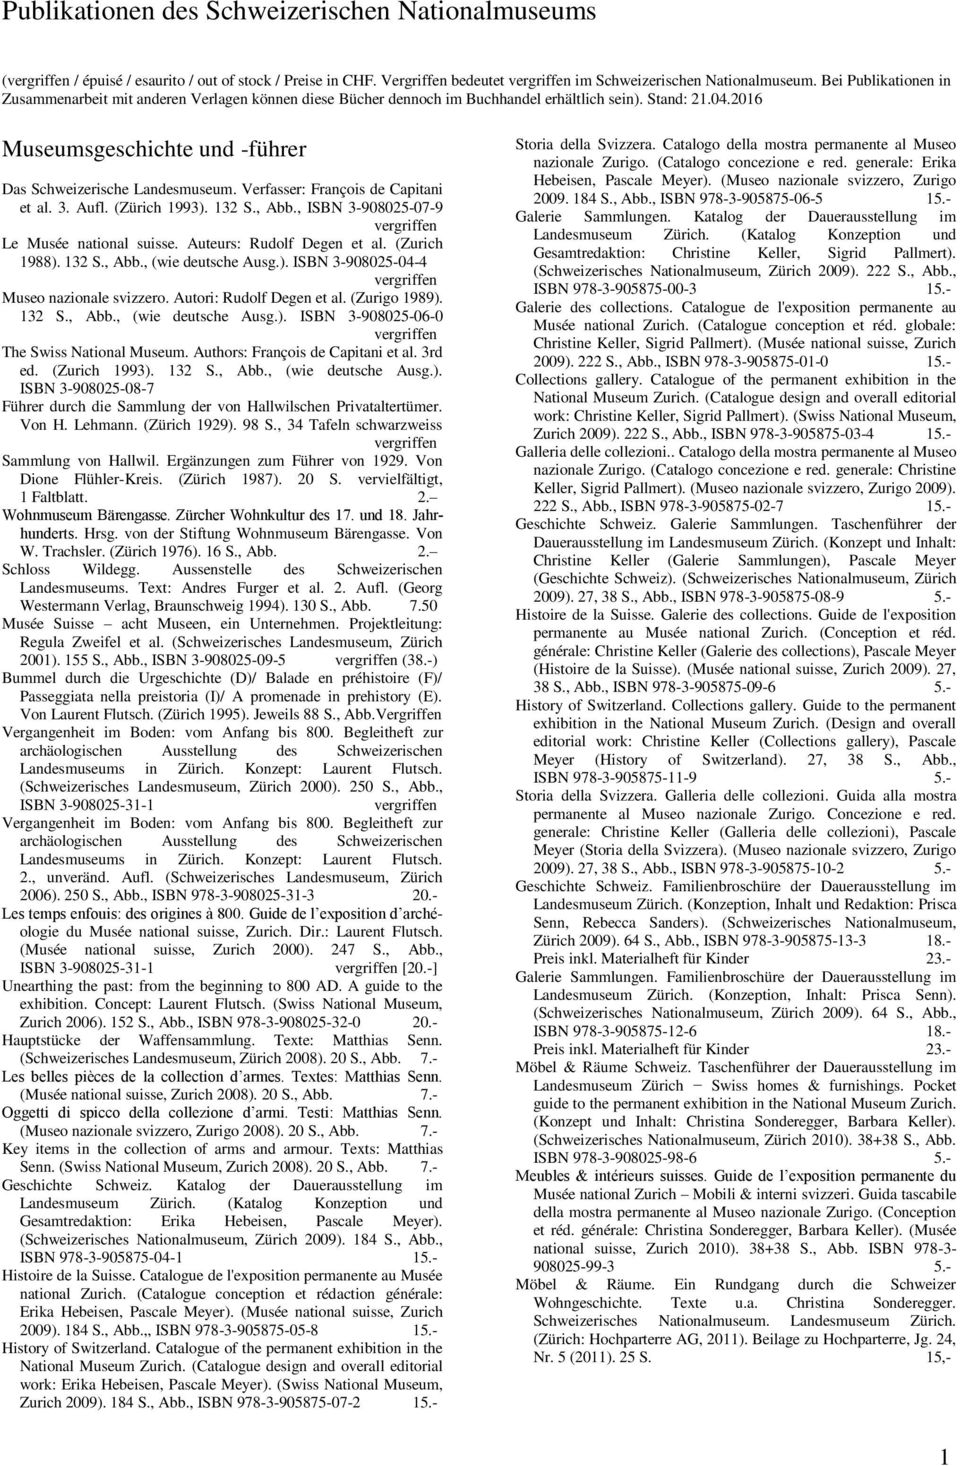 Verfasser: François de Capitani et al. 3. Aufl. (Zürich 1993). 132 S., Abb., ISBN 3-908025-07-9 Le Musée national suisse. Auteurs: Rudolf Degen et al. (Zurich 1988). 132 S., Abb., (wie deutsche Ausg.